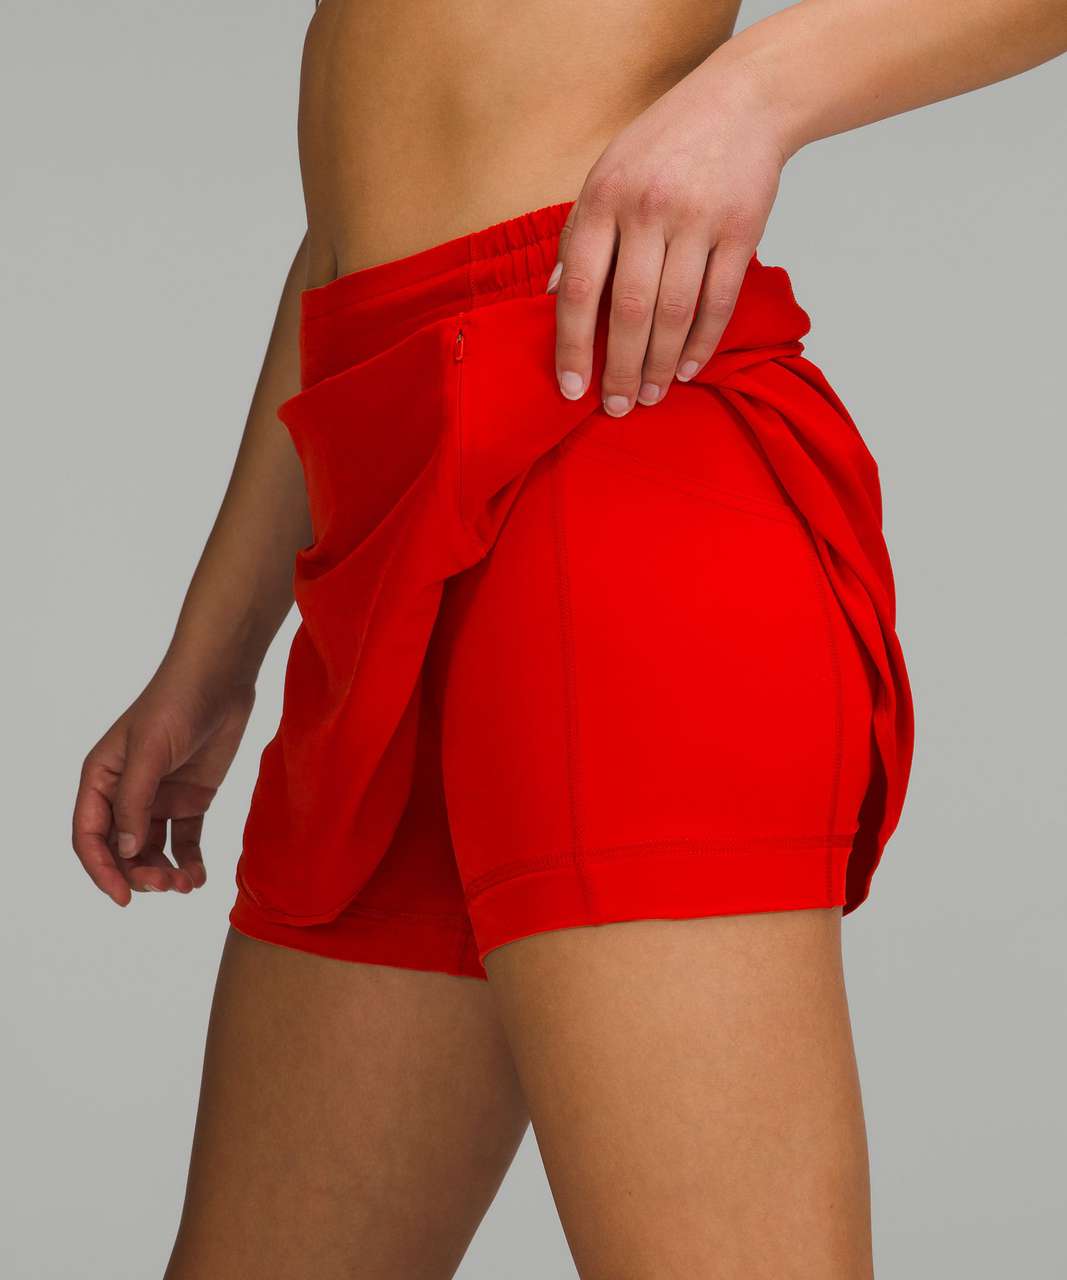 Lululemon Hotty Hot High-Rise Skirt - Dark Red